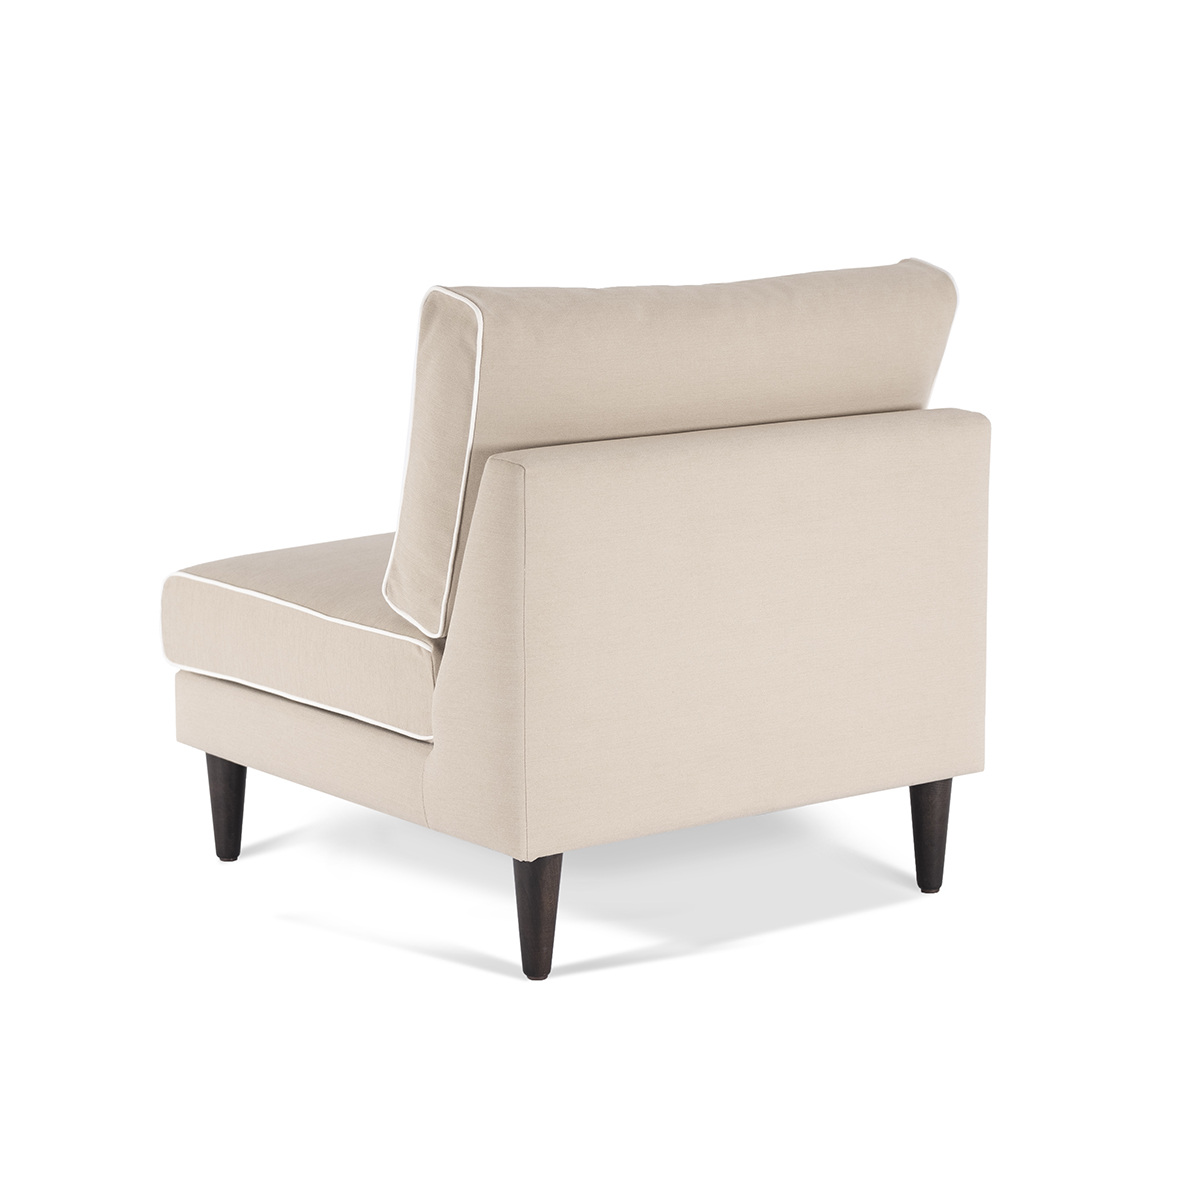 Flip Chair Noa, Beige / White - H80 x W80 x D75 cm - Cotton / Wood - image 4